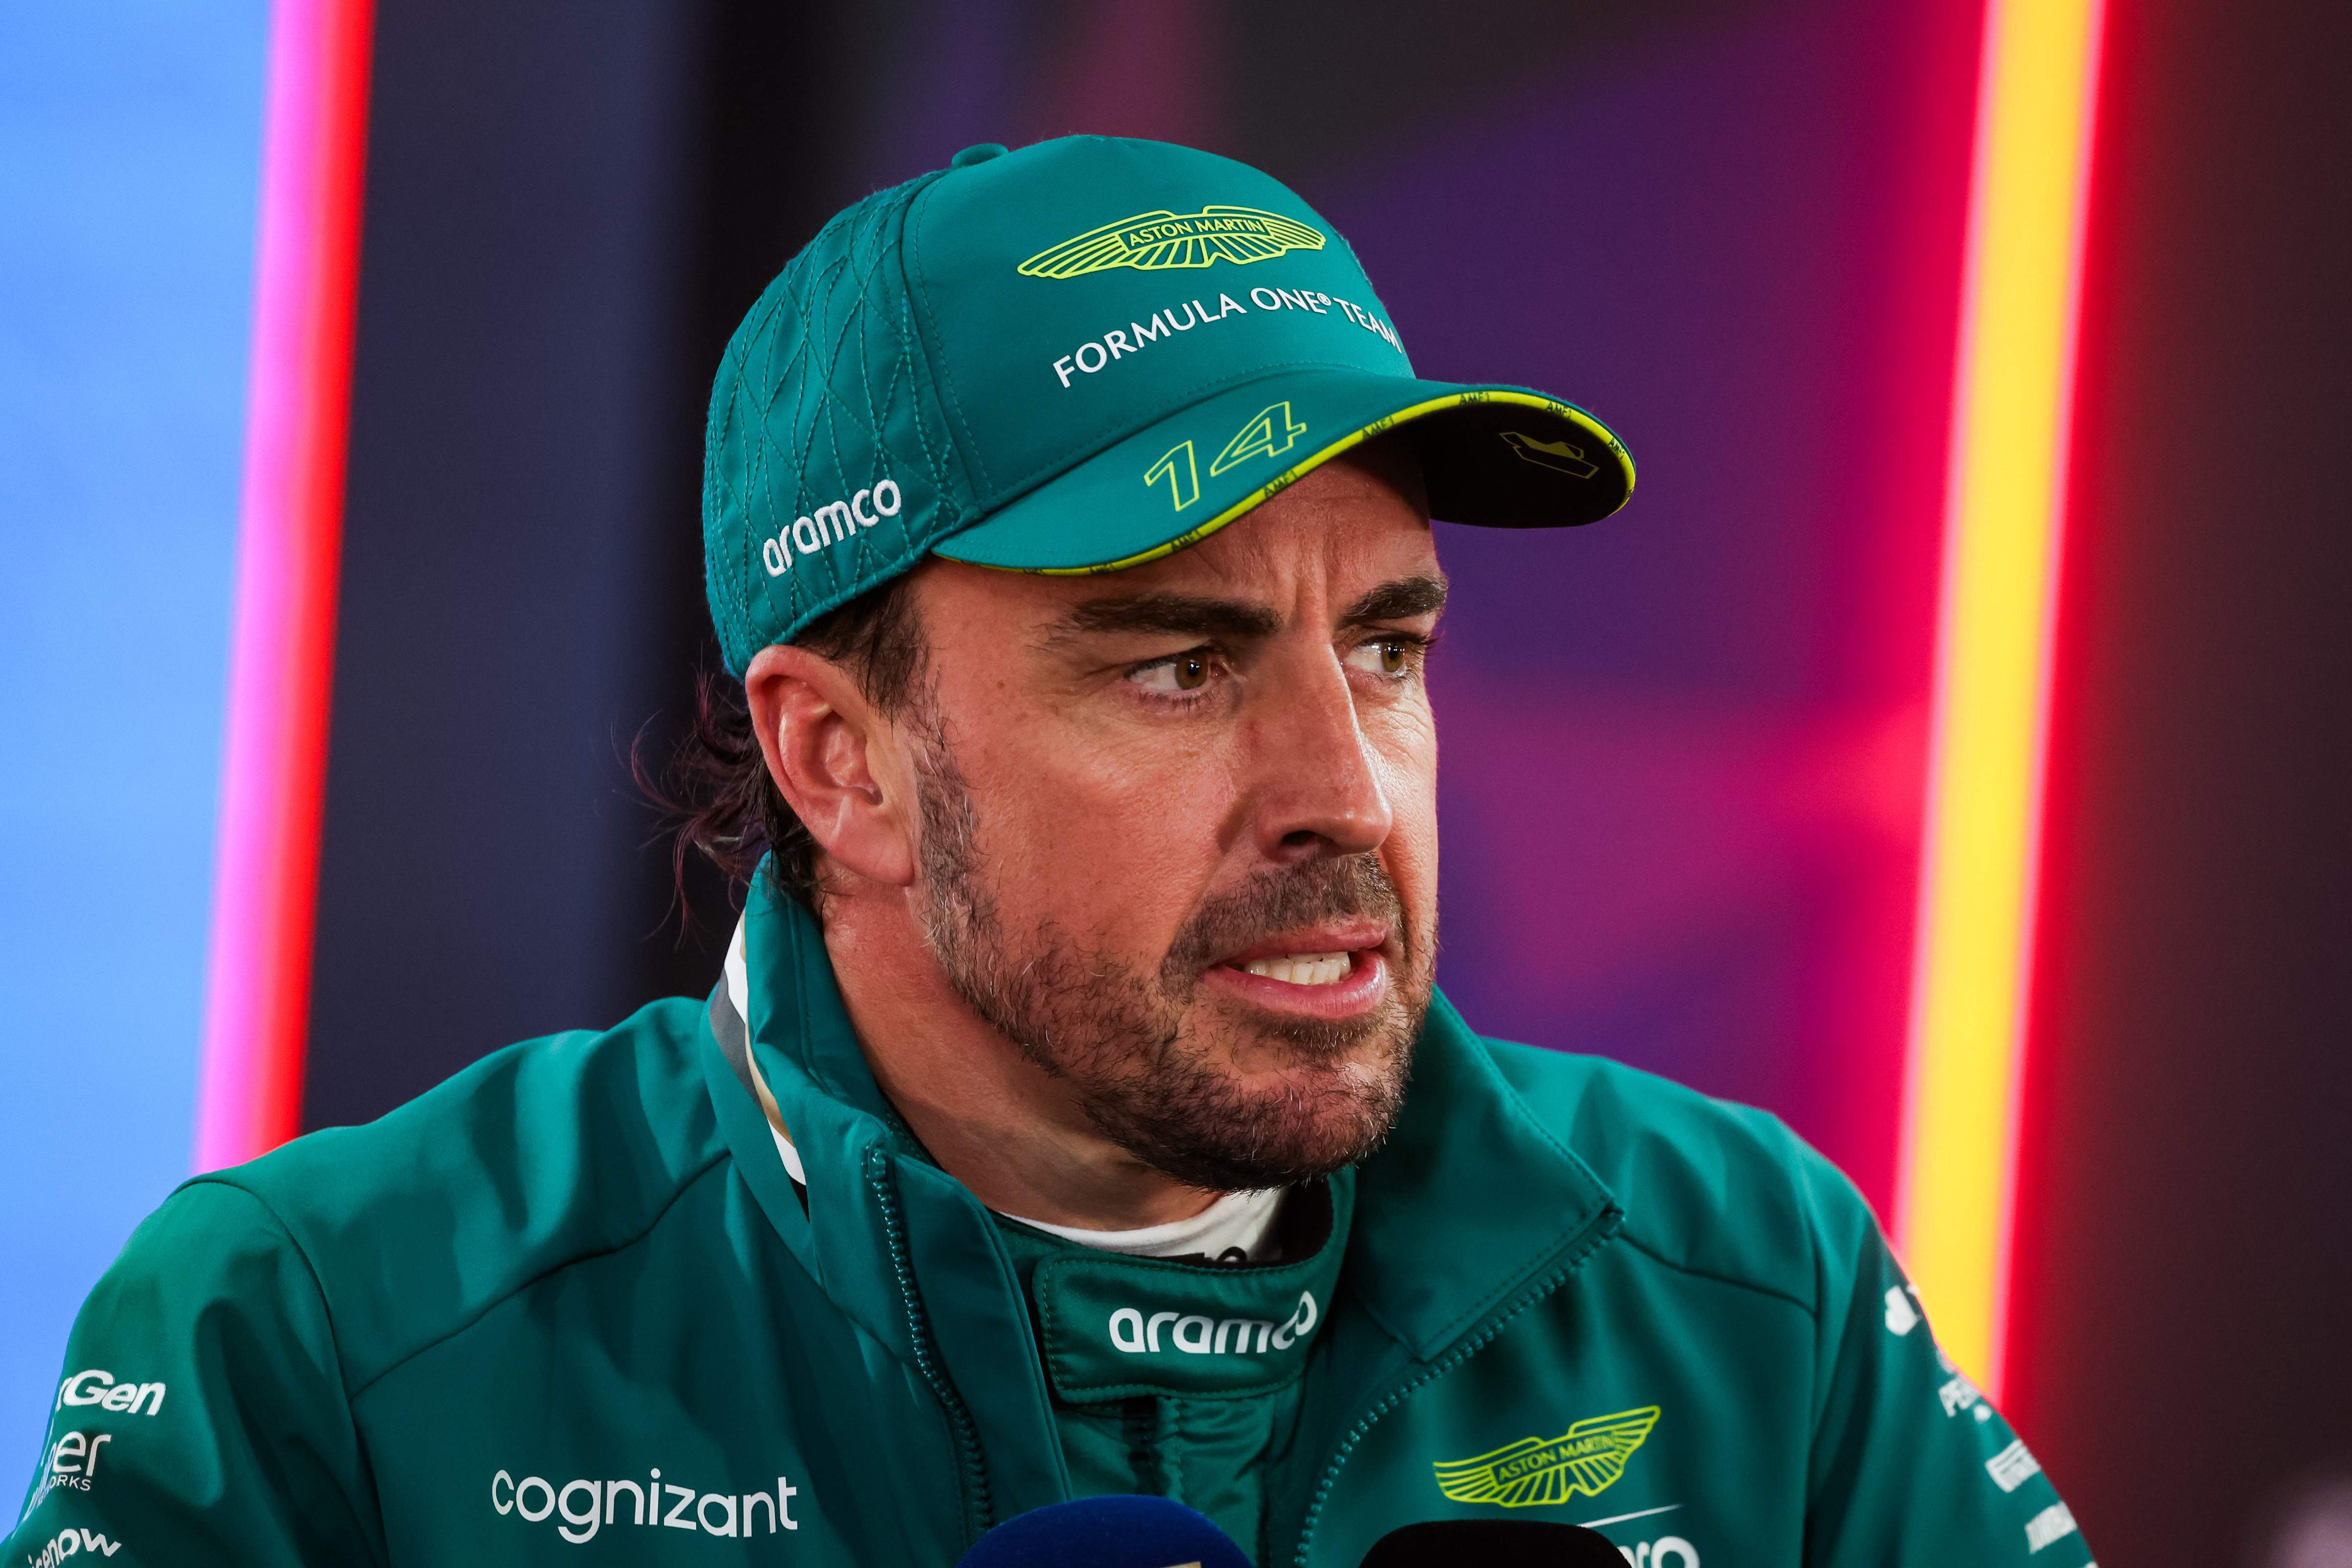 5 equips van tancar la porta a Fernando Alonso, no ho volien, només li quedava Aston Martin